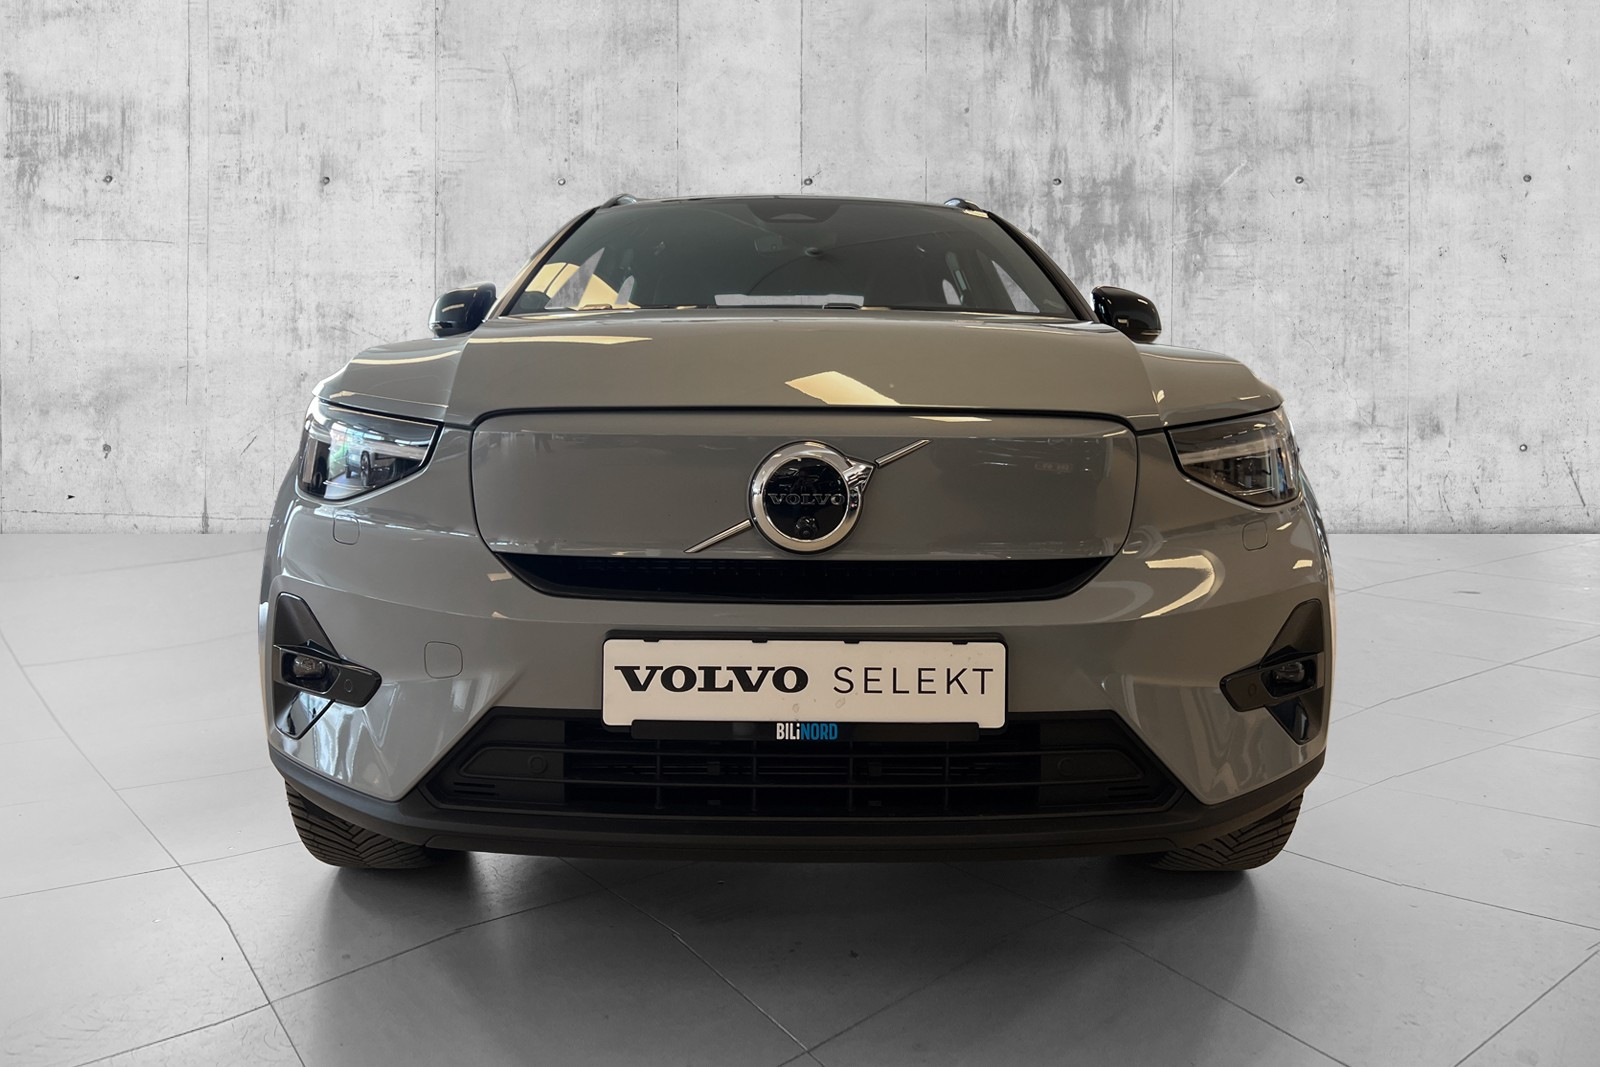 Interigrert parkeringskamera foran interigrert i Volvo emblem